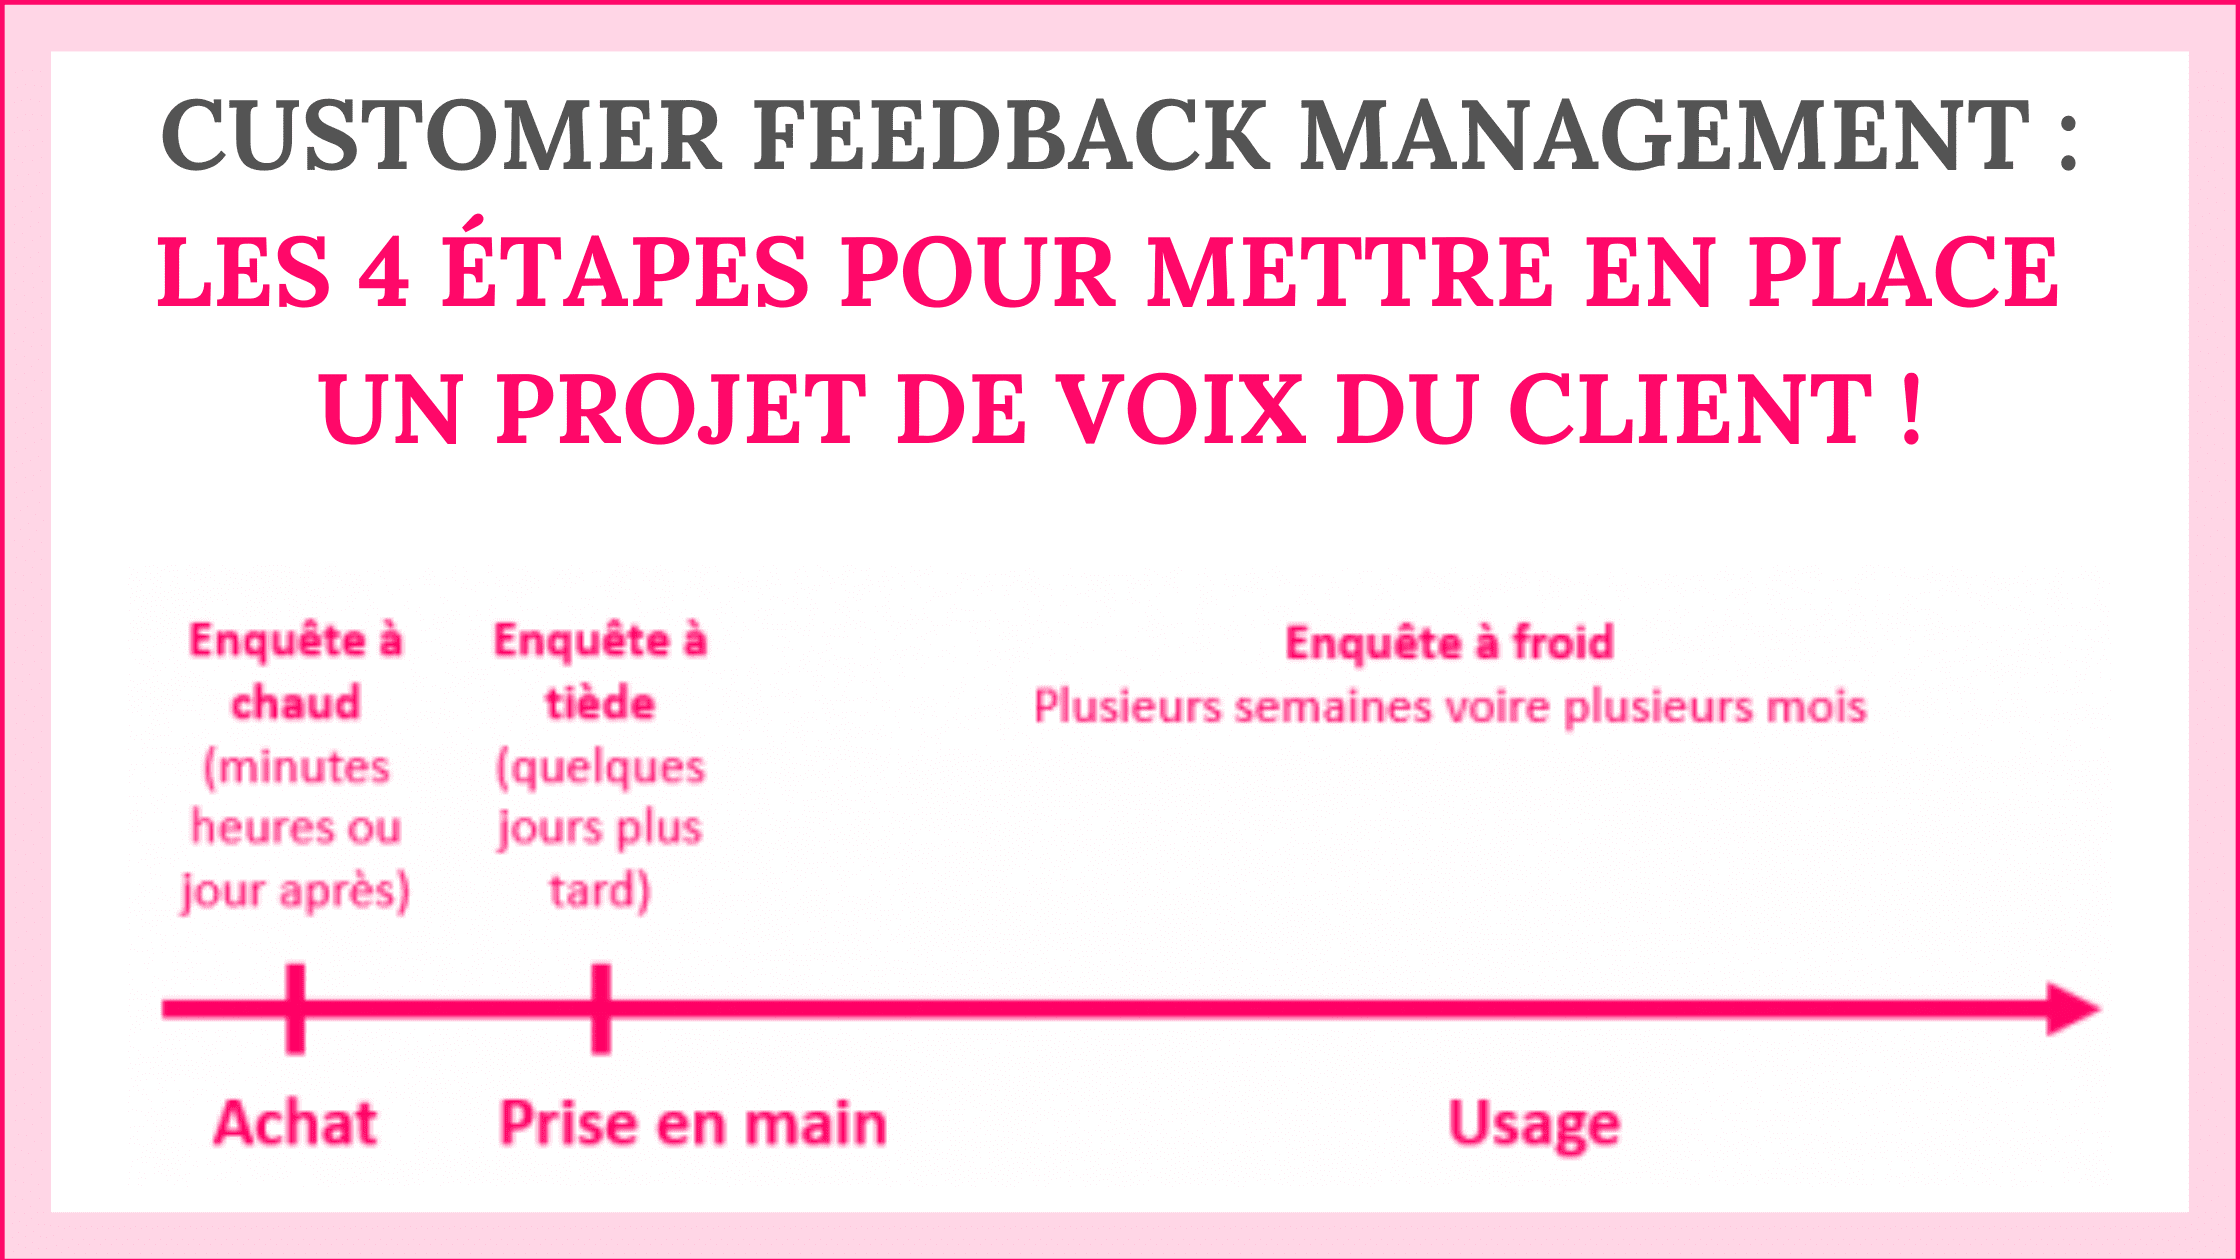 Customer Feedback Management : les 4 étapes pour mettre en place un projet de Voix du Client ! 9